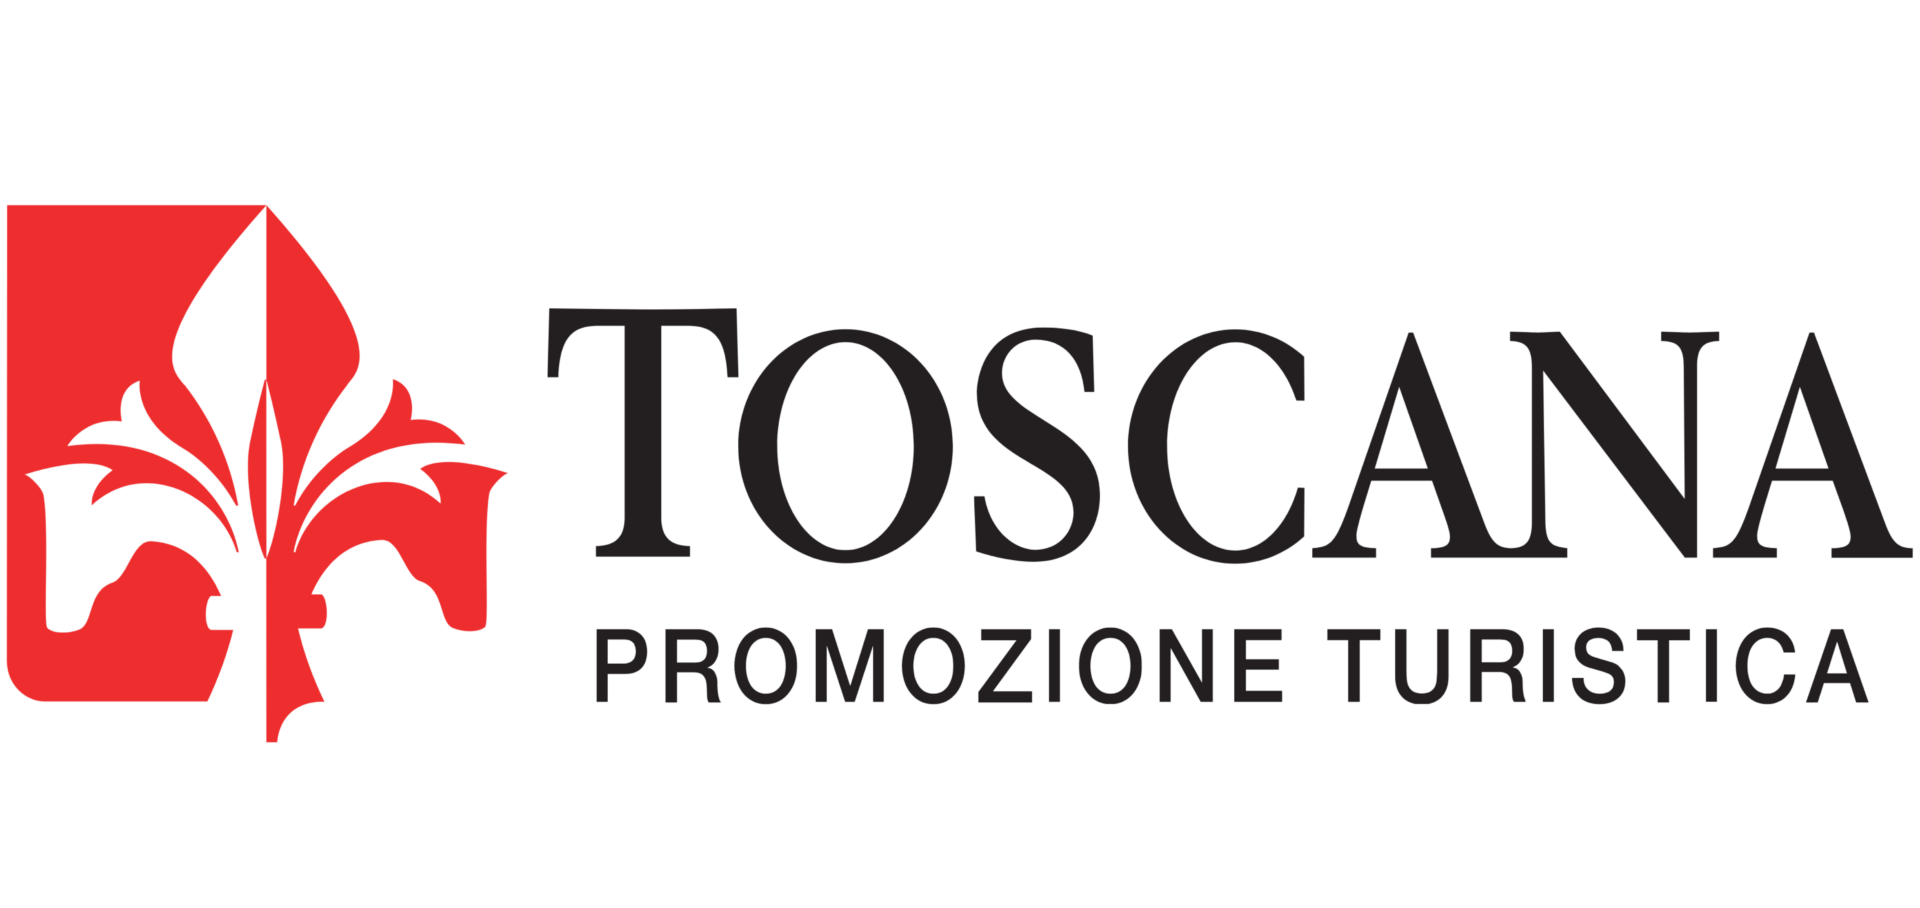 Toscana promozione turistica